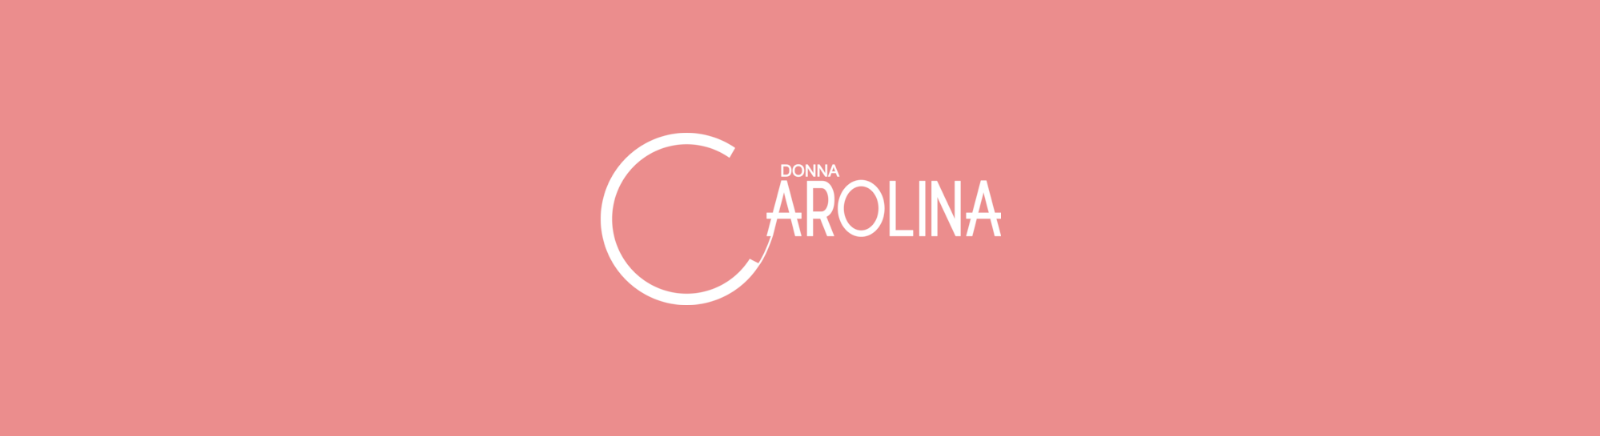 Juppen: Donna Carolina Boots für Damen kaufen online shoppen